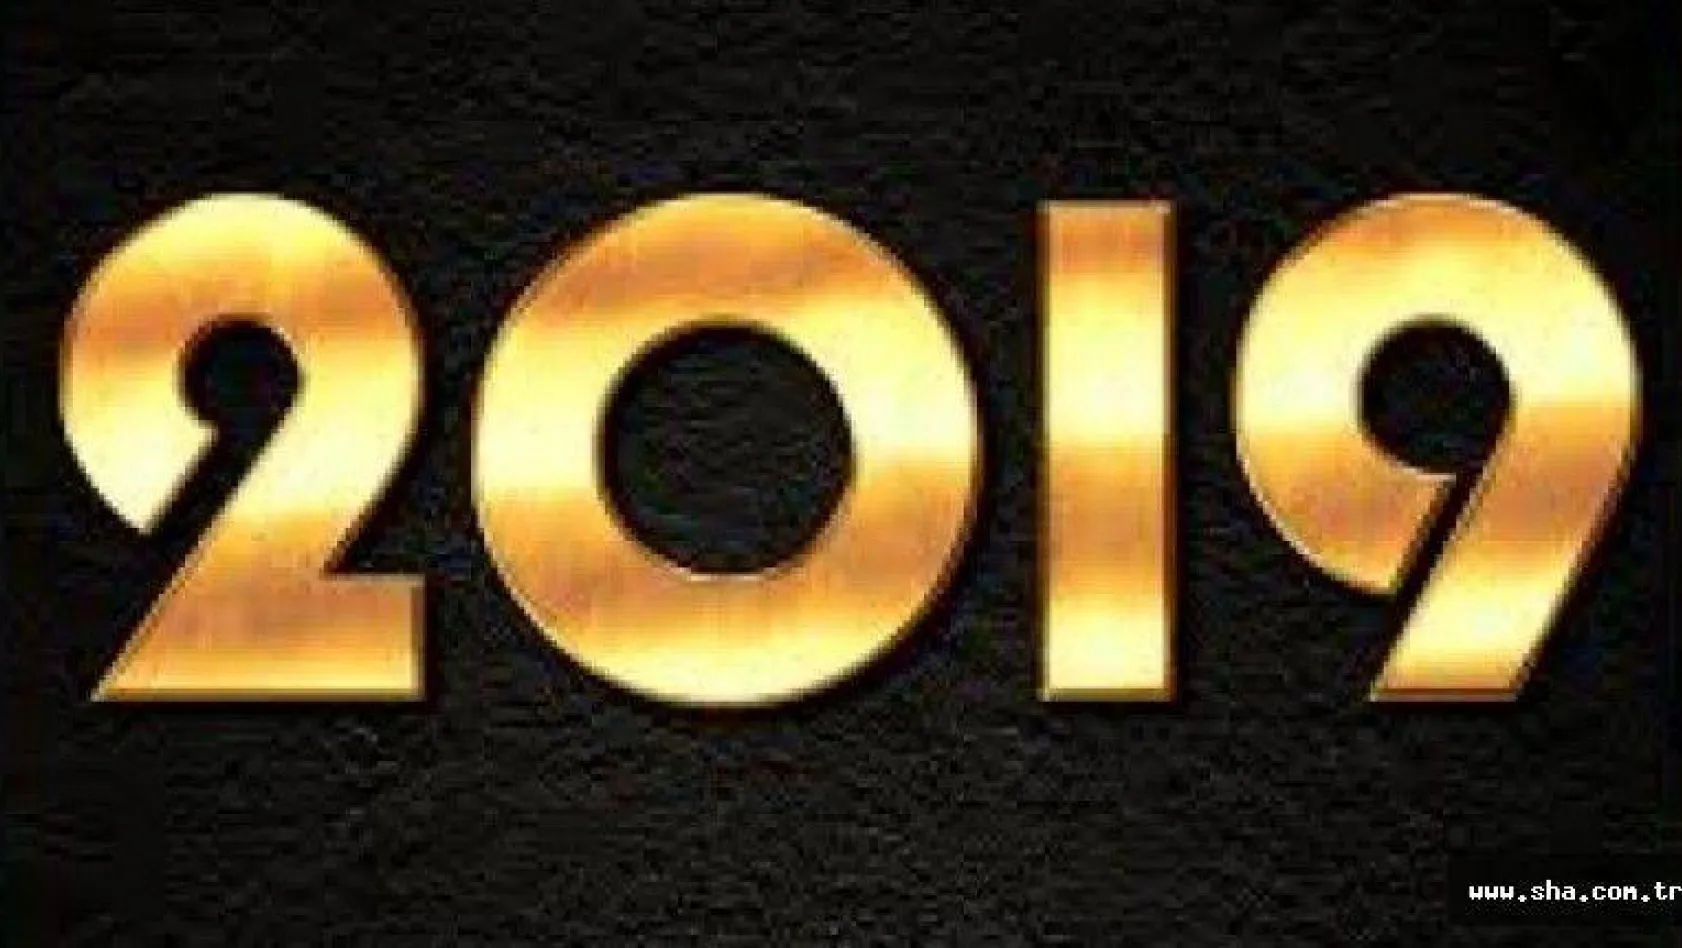 Yeni Yıl Mesajları 2019! En güzel Yılbaşı Mesajları... Resimli yılbaşı mesajları (Yılbaşı tebrik ve kutlama sözleri...)